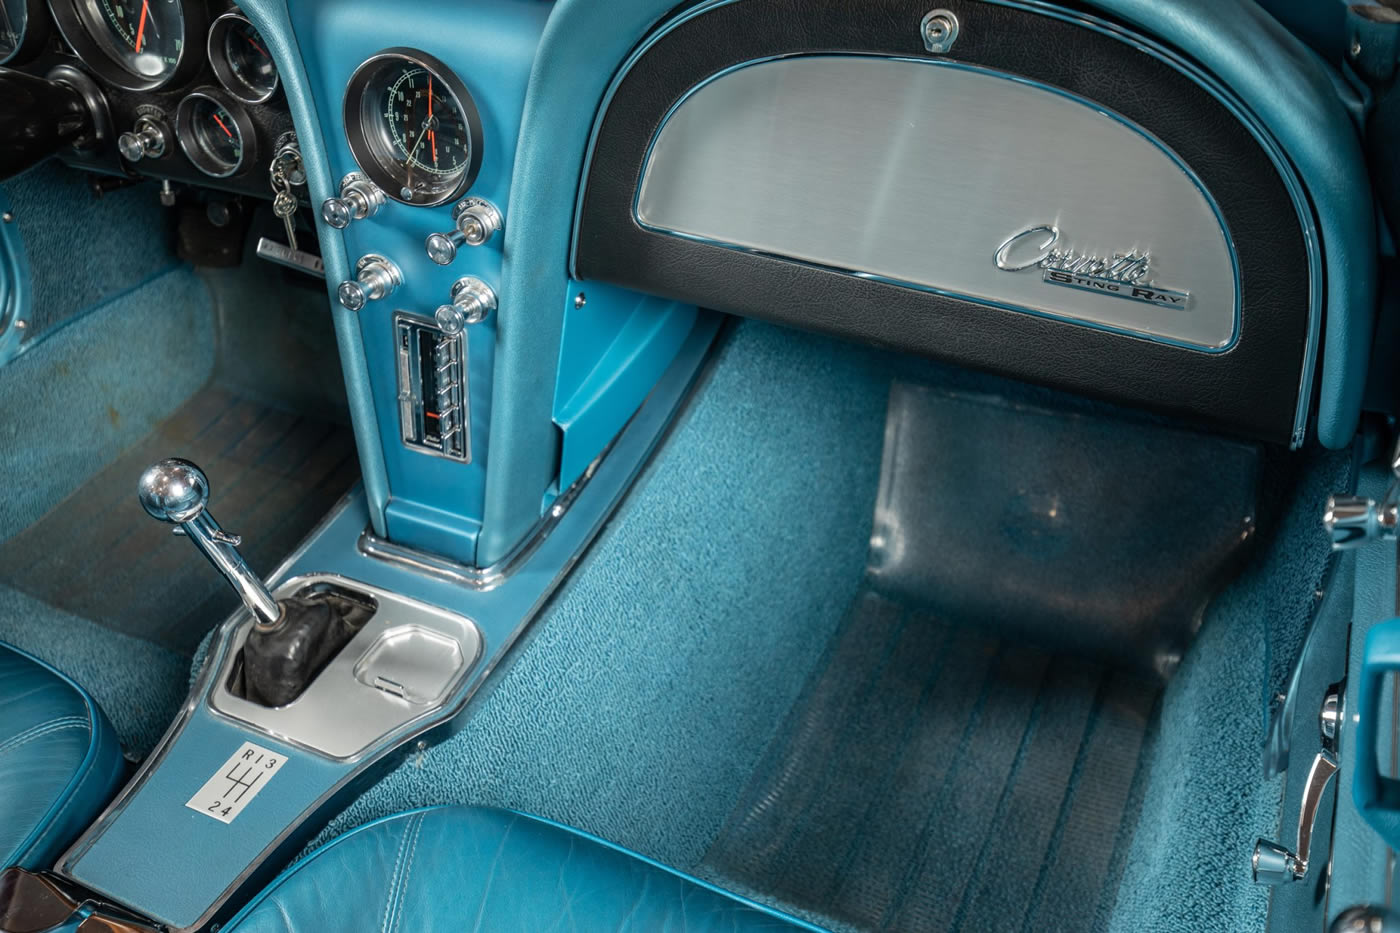 1965 Corvette Convertible L78 396/425 4-Speed in Nassau Blue